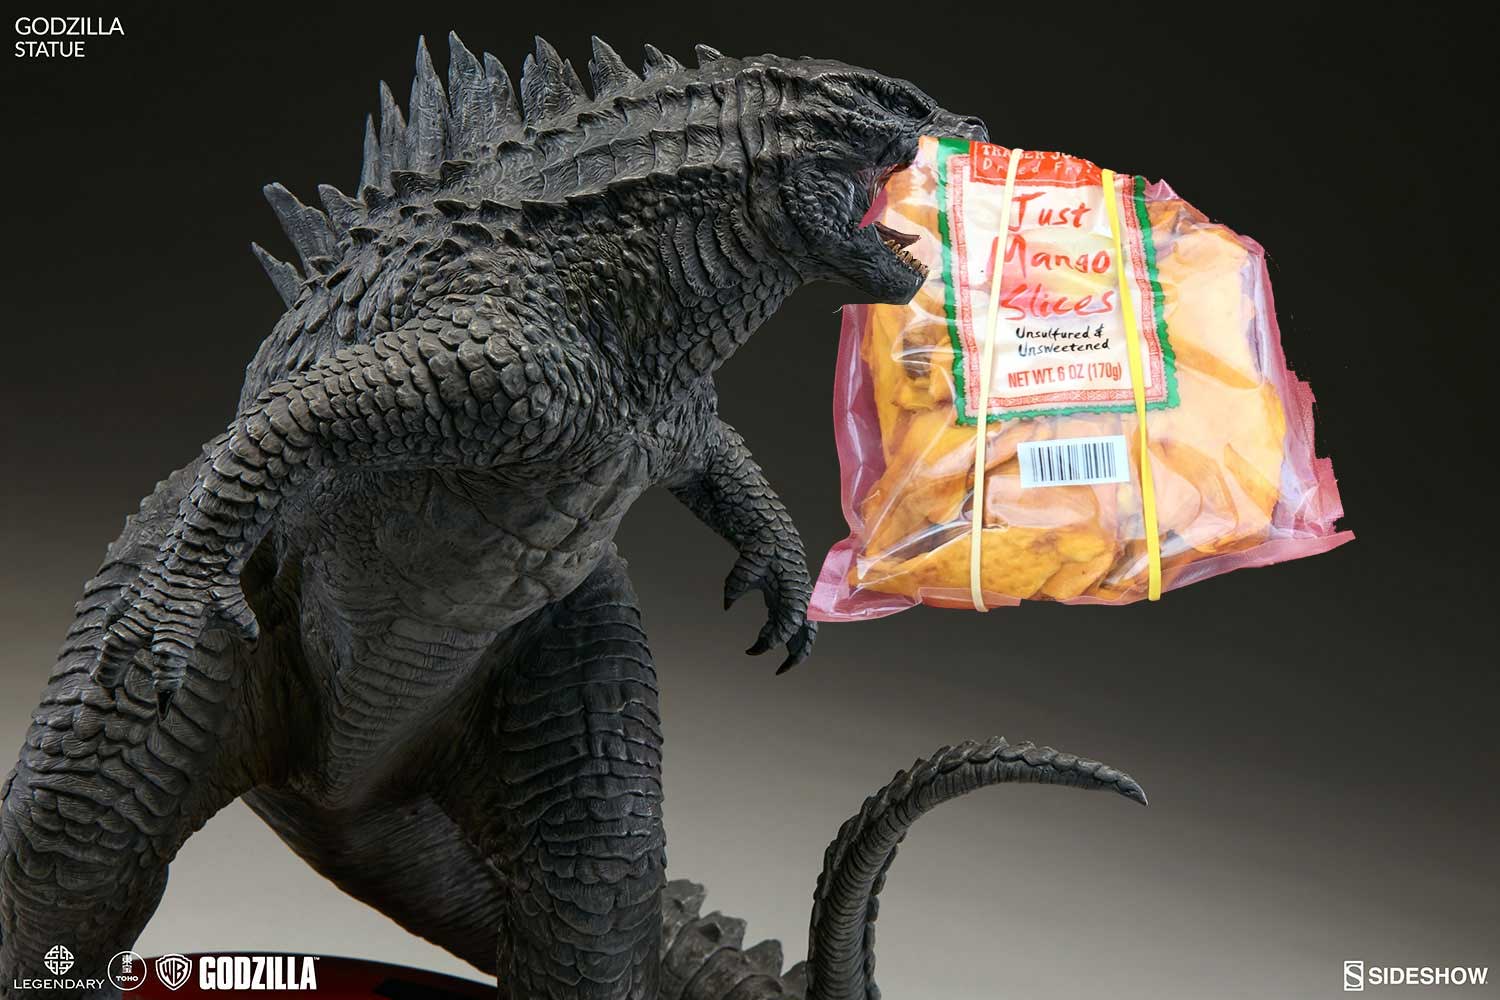 Godzilla eating dried mango